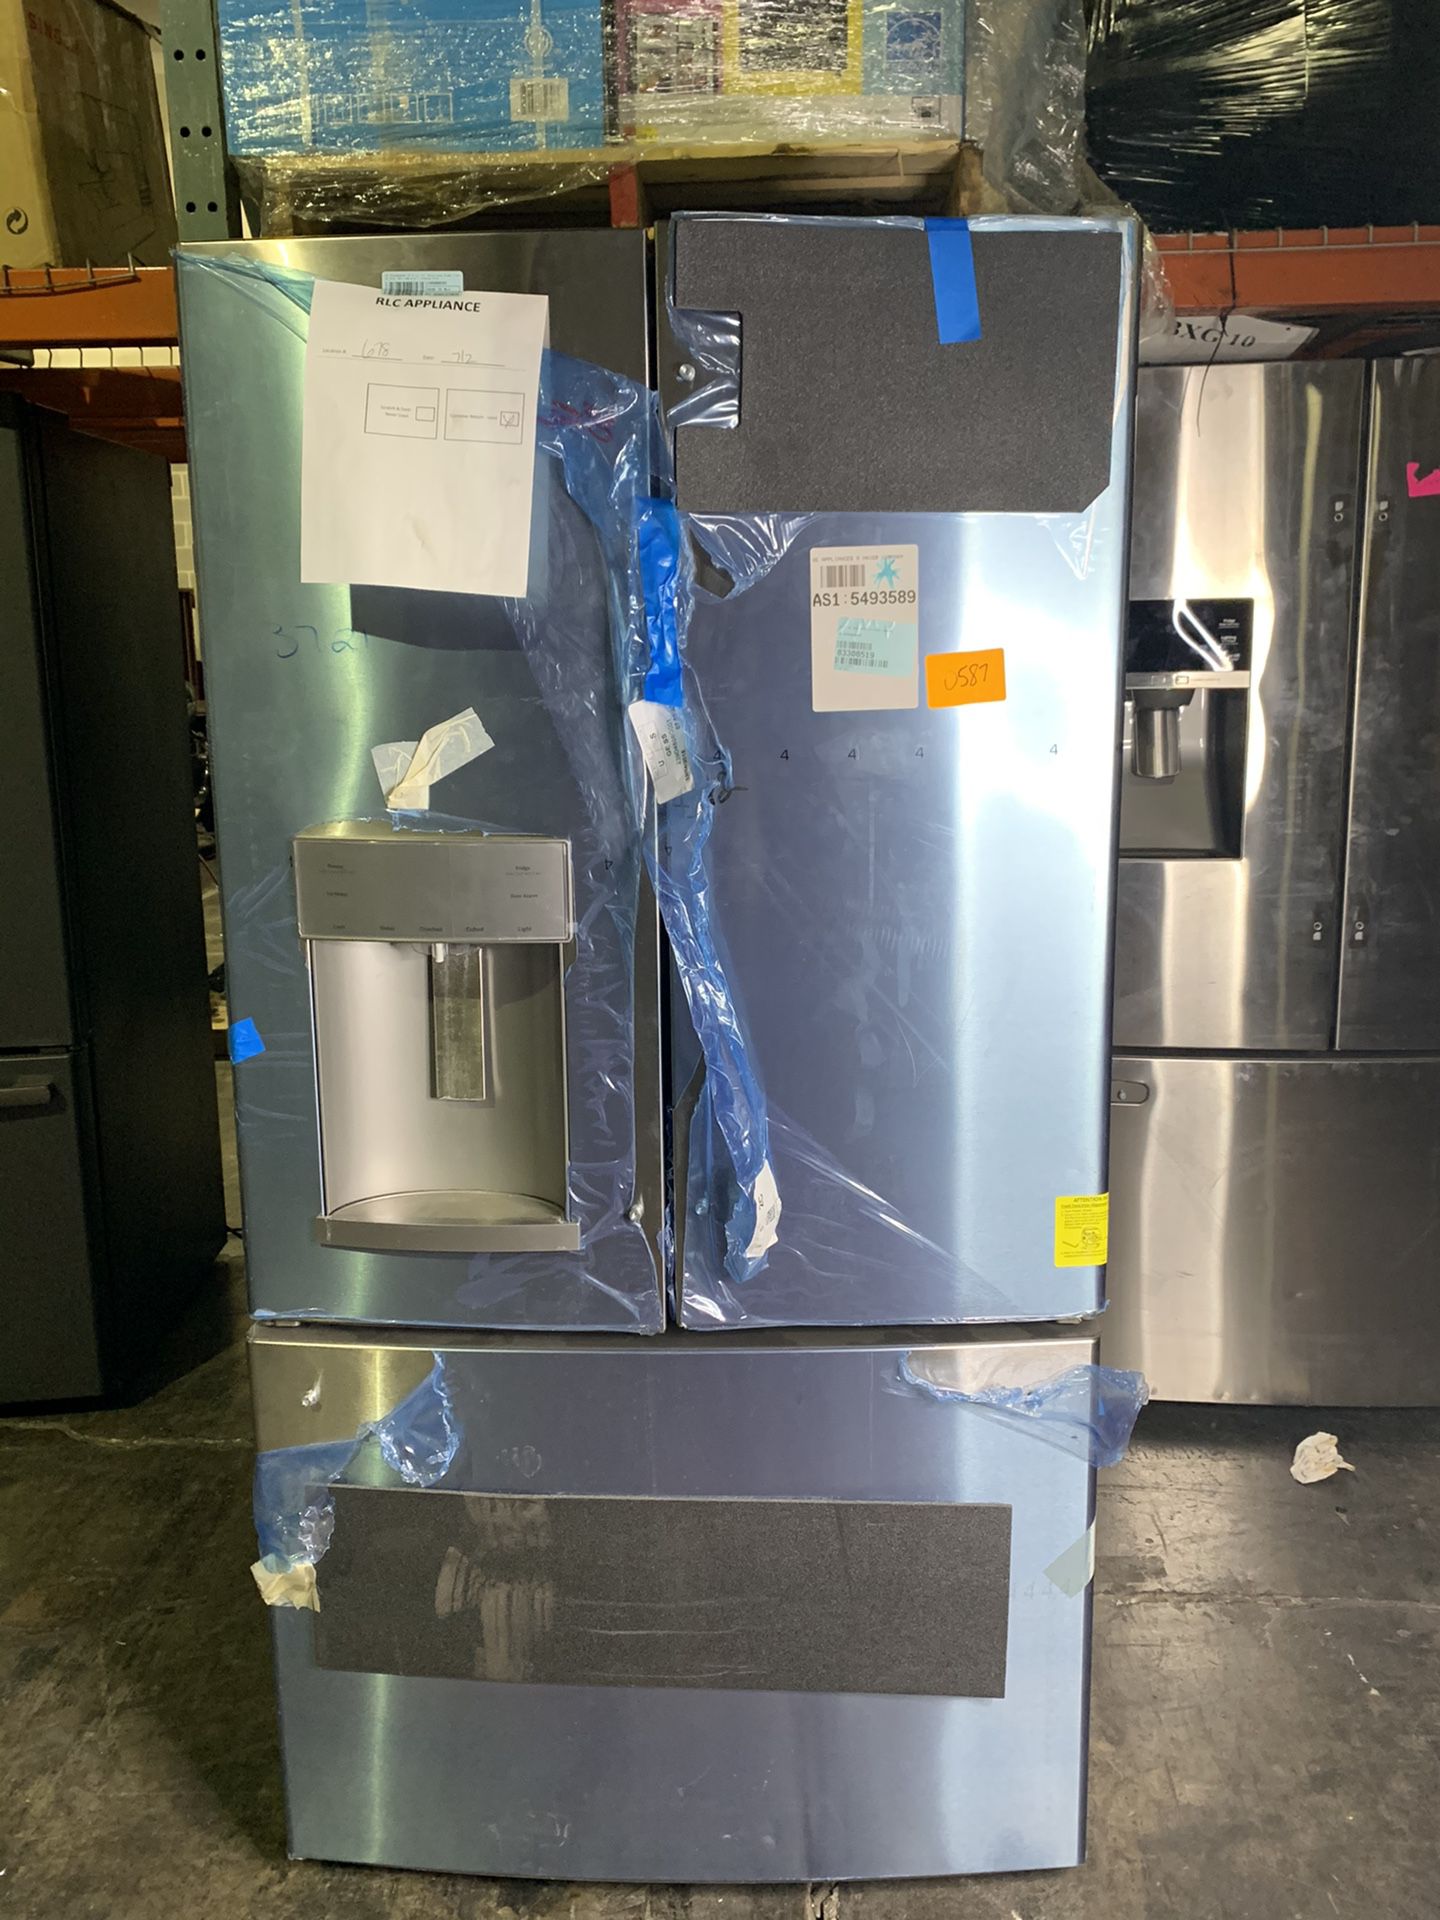 GE French door refrigerator